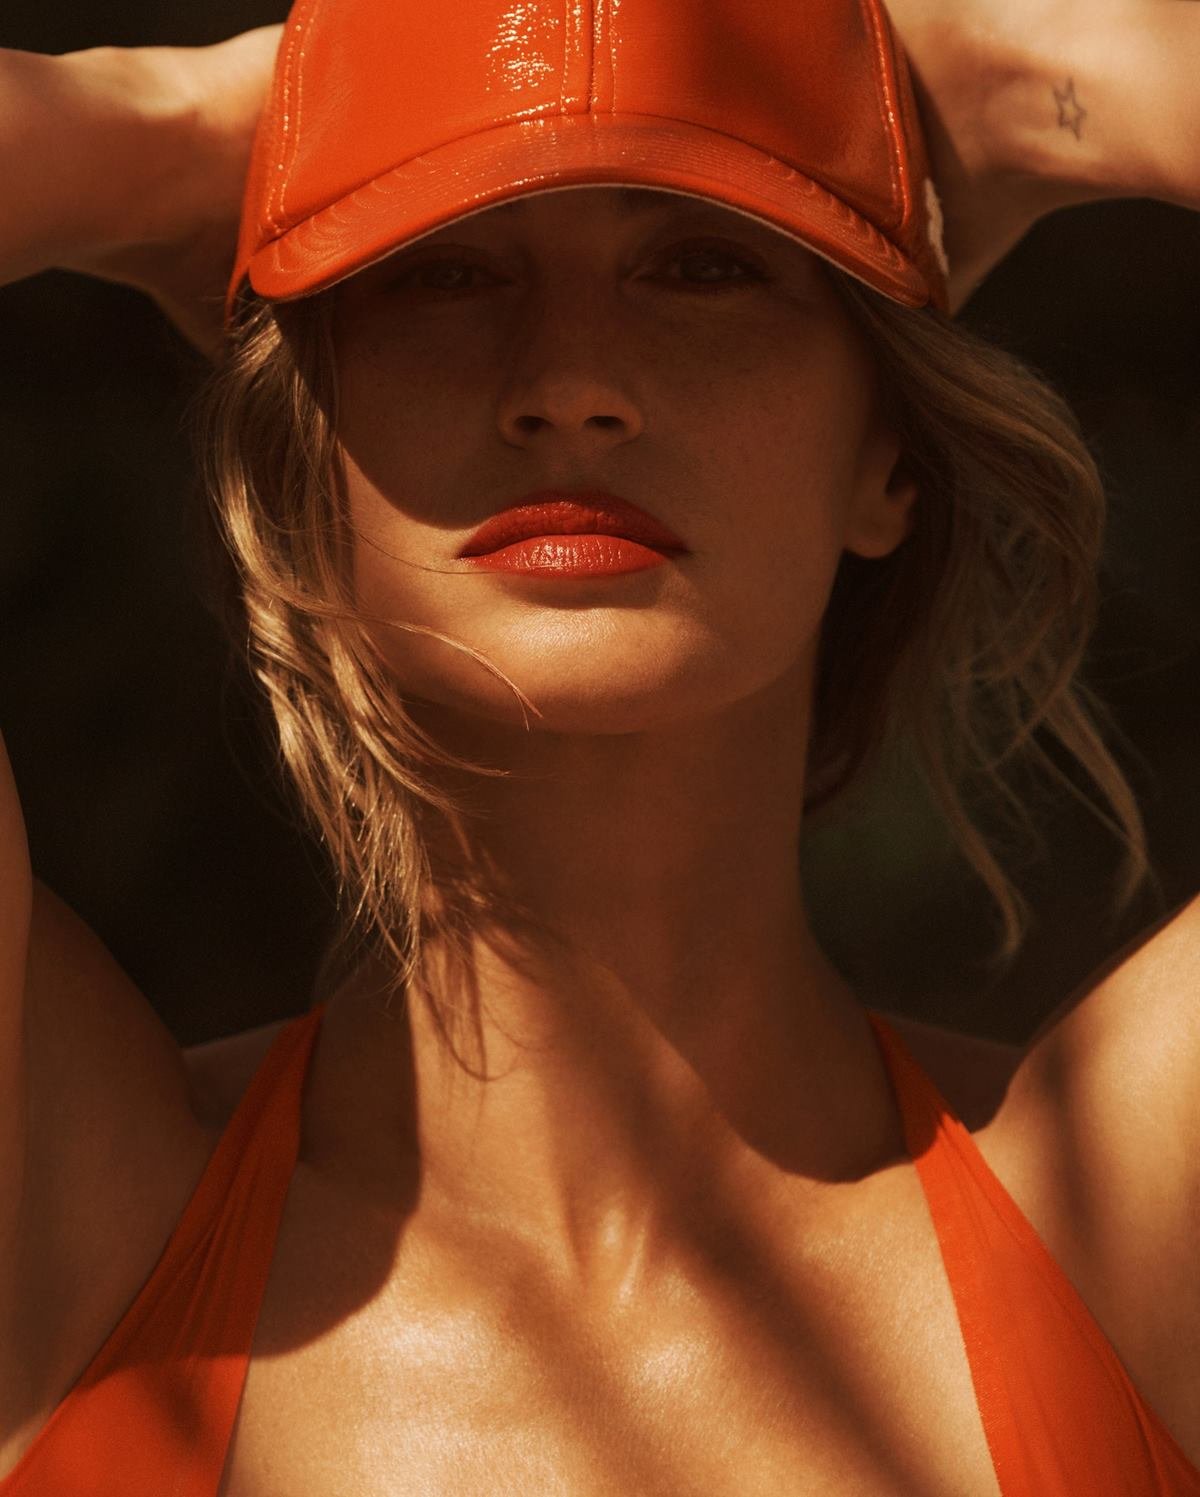 A modelo Gisele Bündche, uma mulher branca e de meia idade, com cabelo loiro ondulado, posa para foto em praia na Costa Rica. Os cliques são da revista Vanity Fair. Gisele usa um maiô laranja e um chapéu, também laranja, invernizado. - Metrópoles